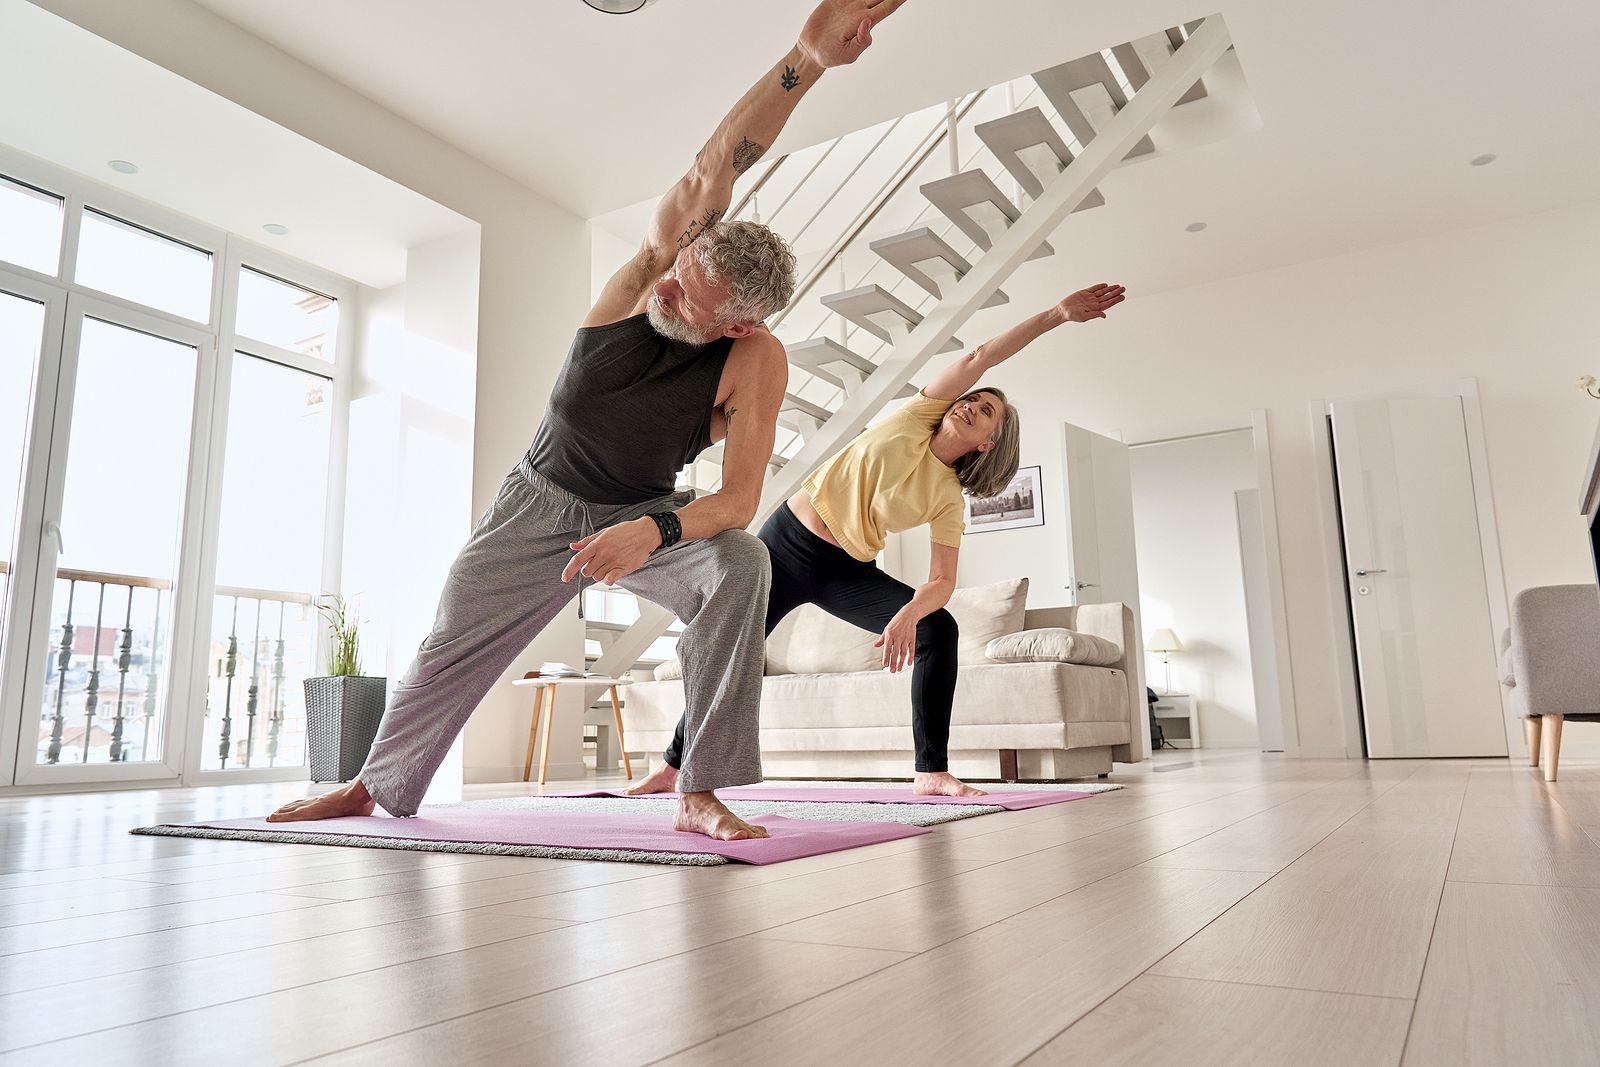 Investigadores explican por qué el ejercicio protege contra el envejecimiento. Foto: Bigstock